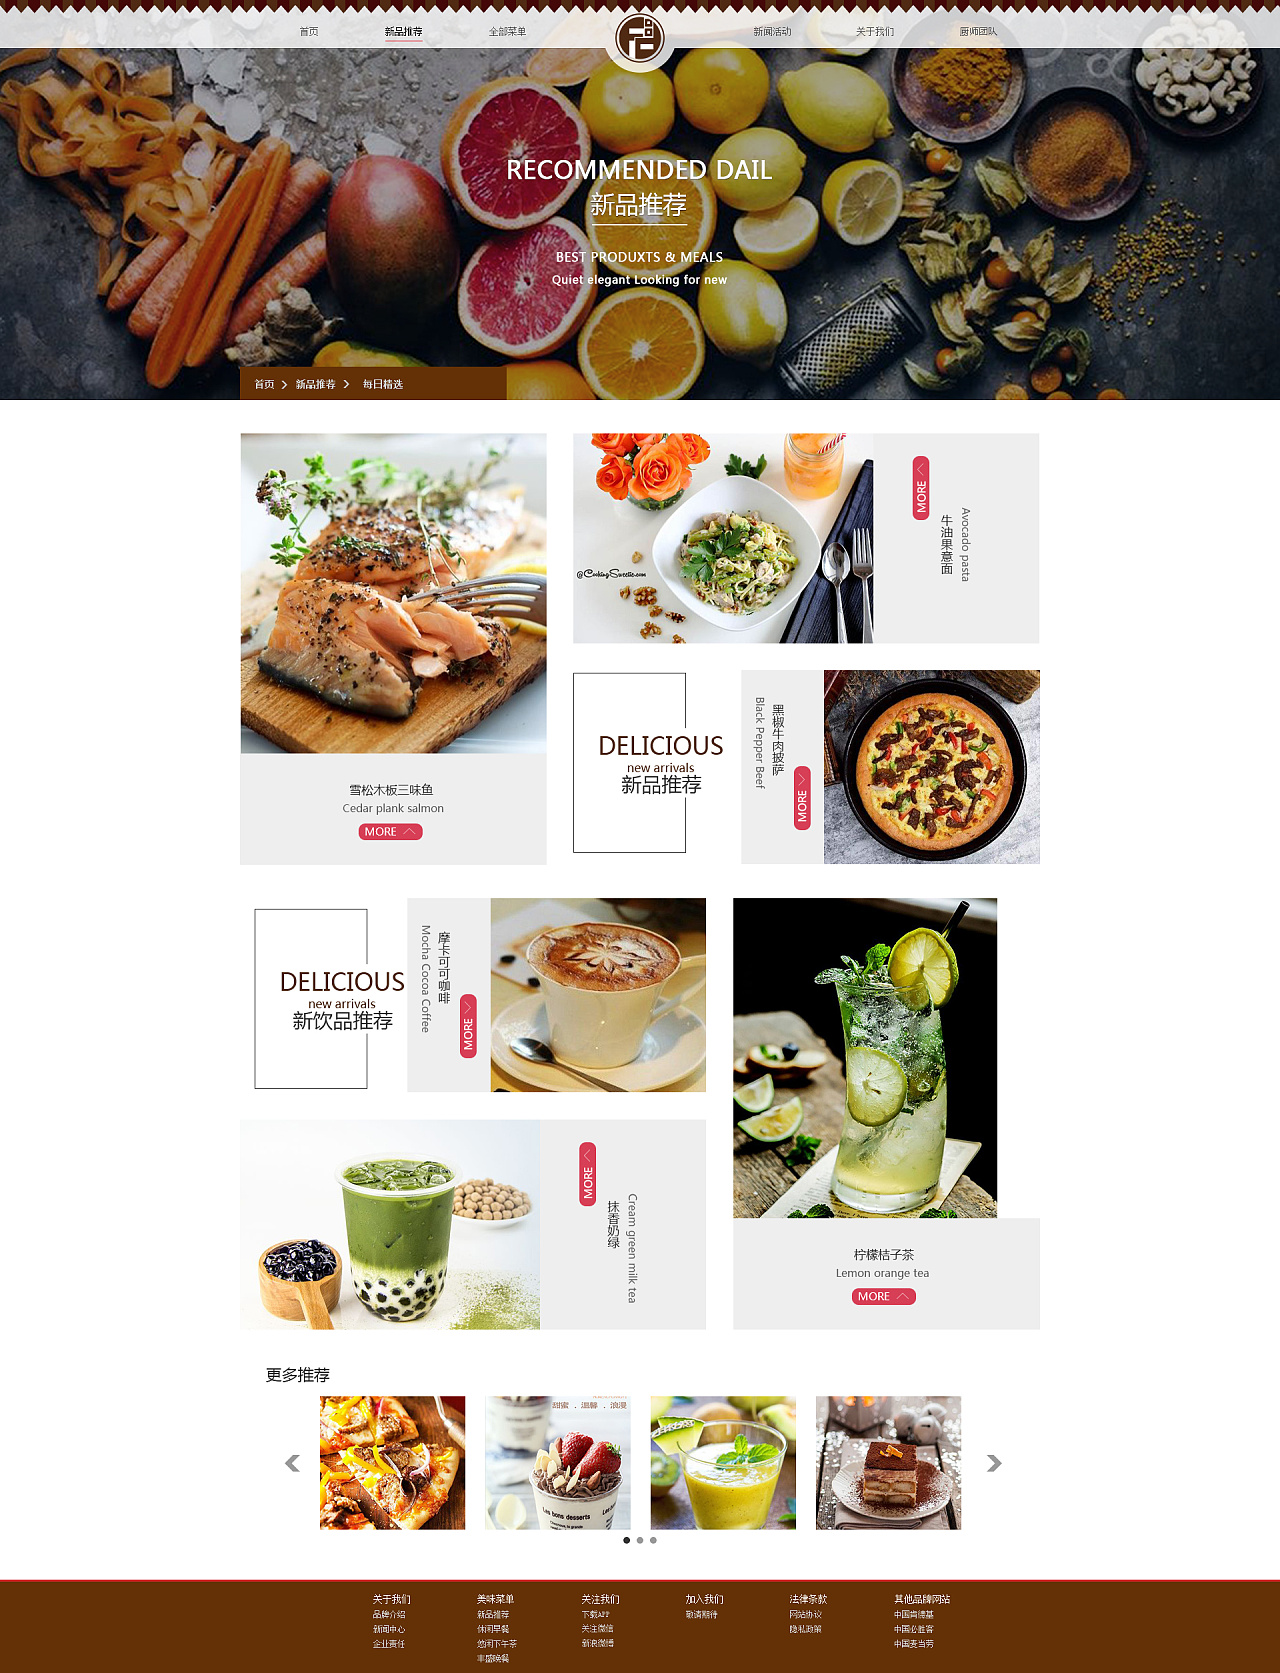 食品素材图网站大全图片